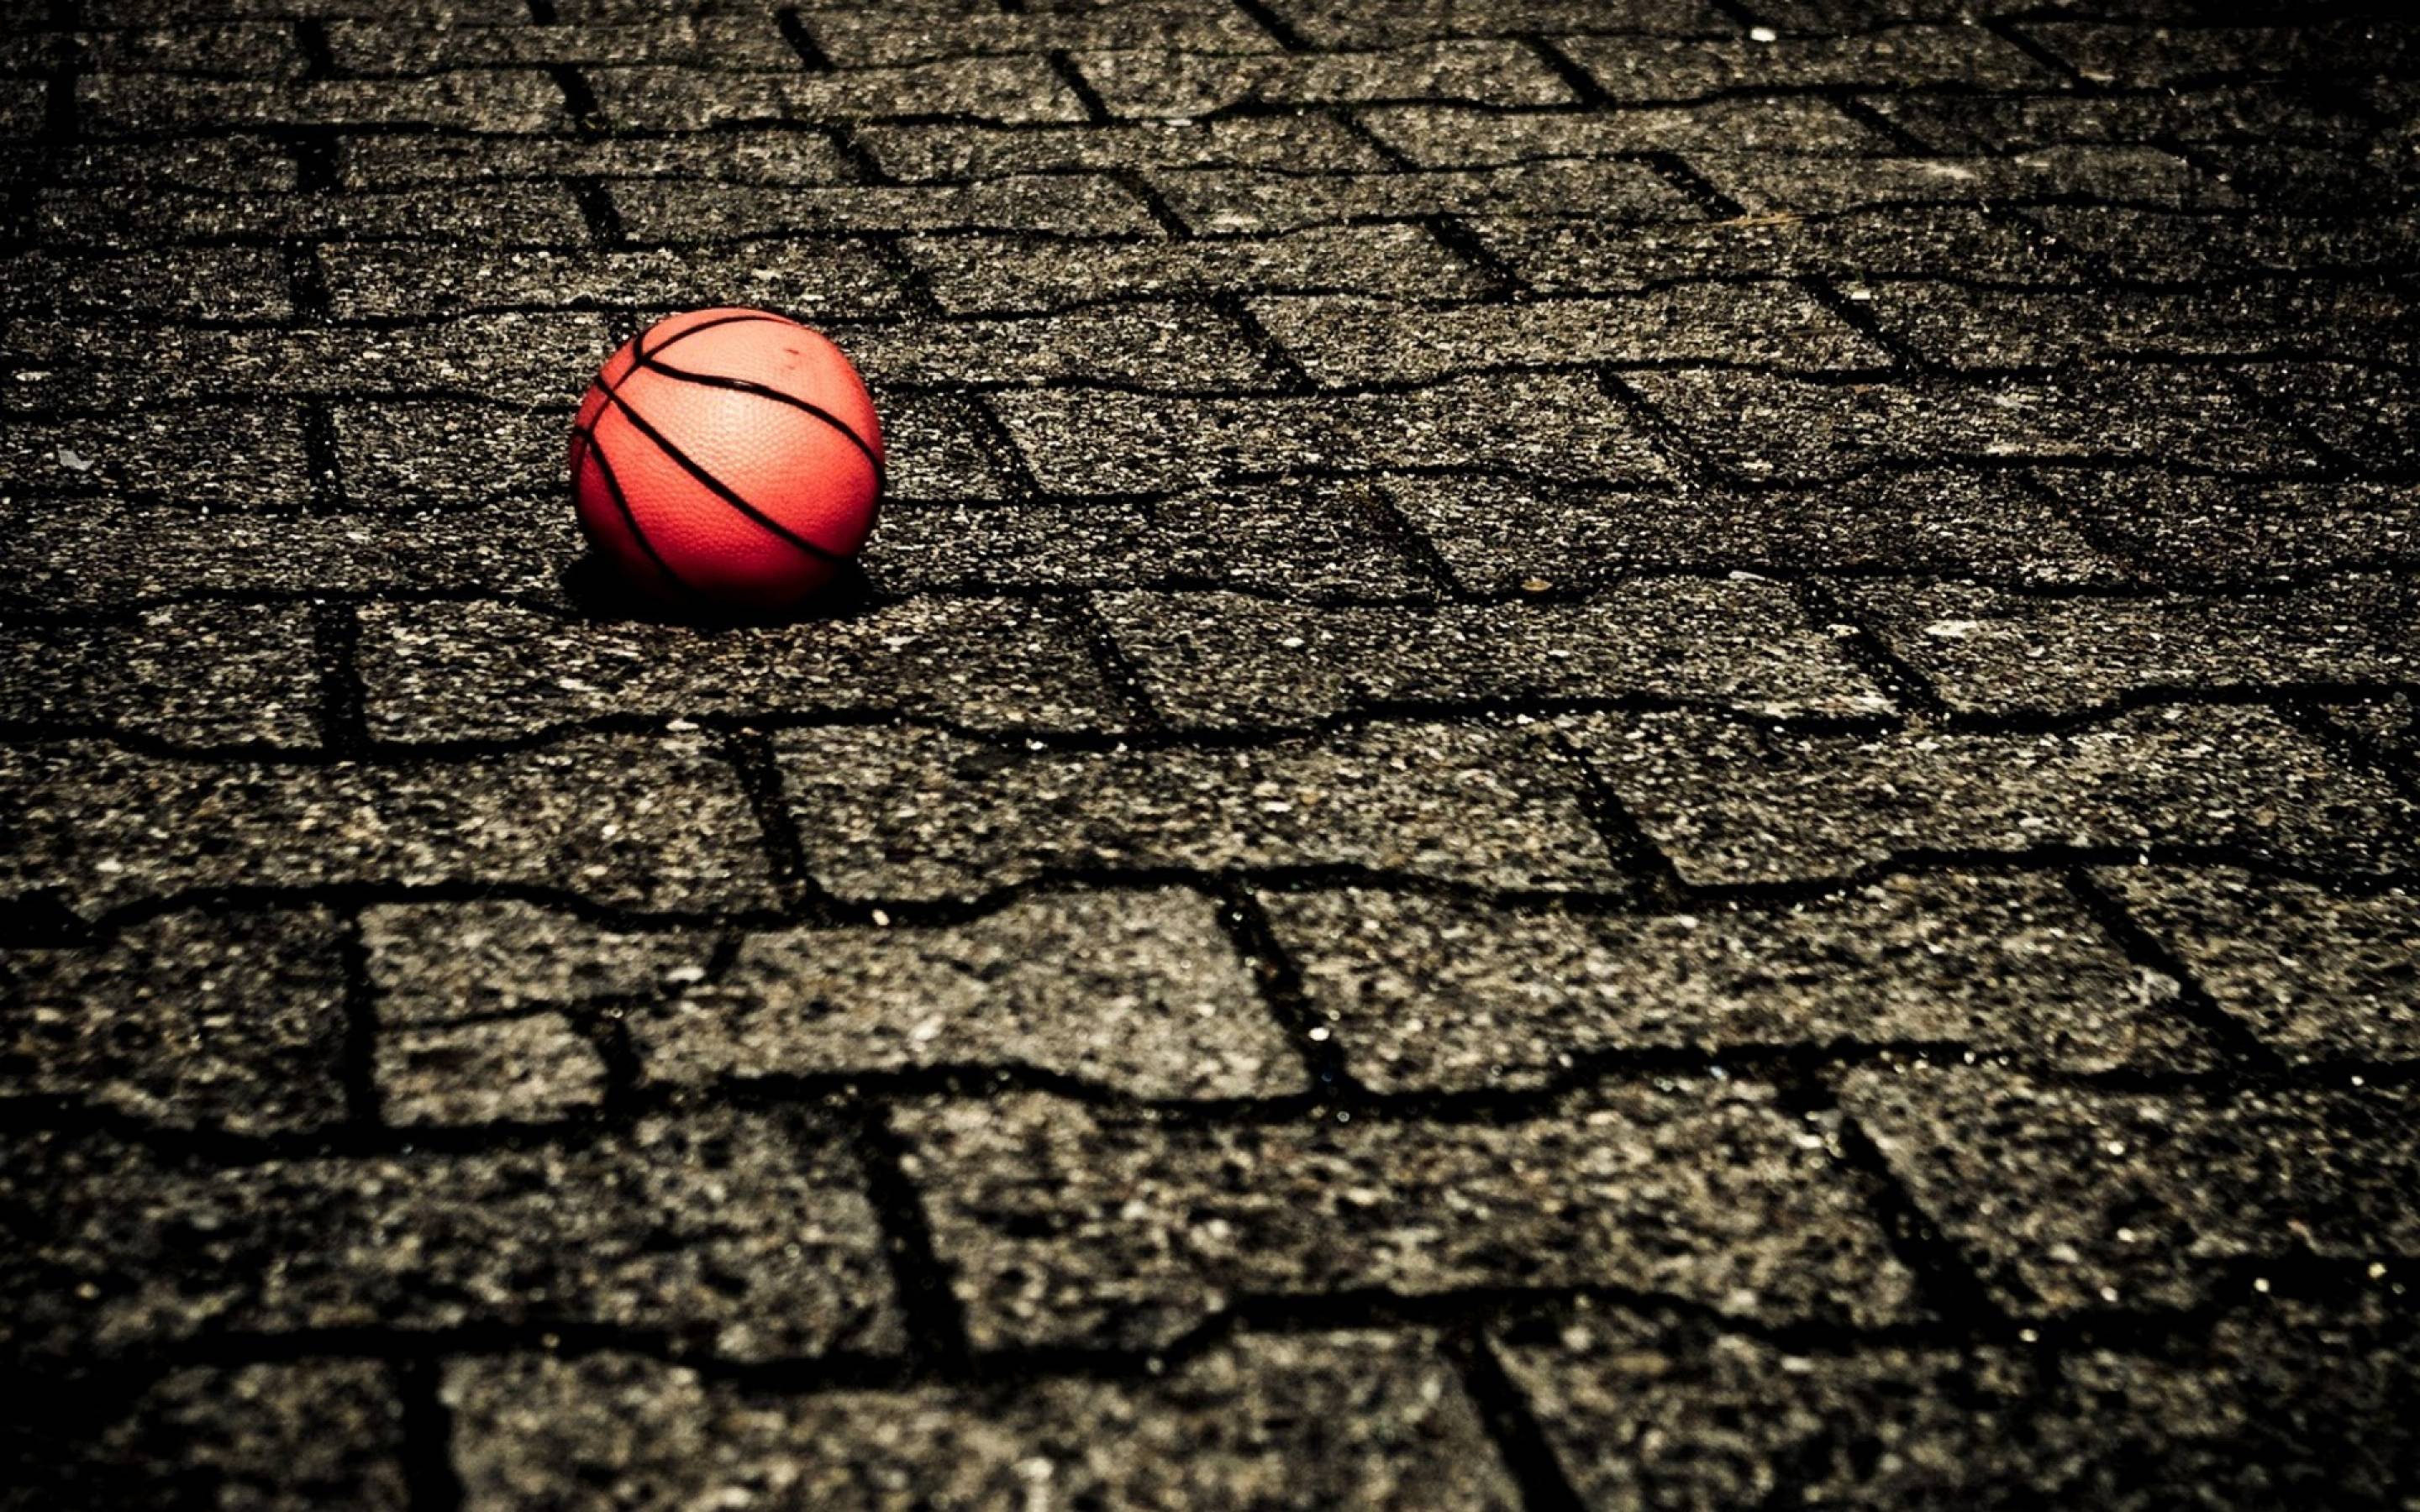 HD Basketball Wallpaper